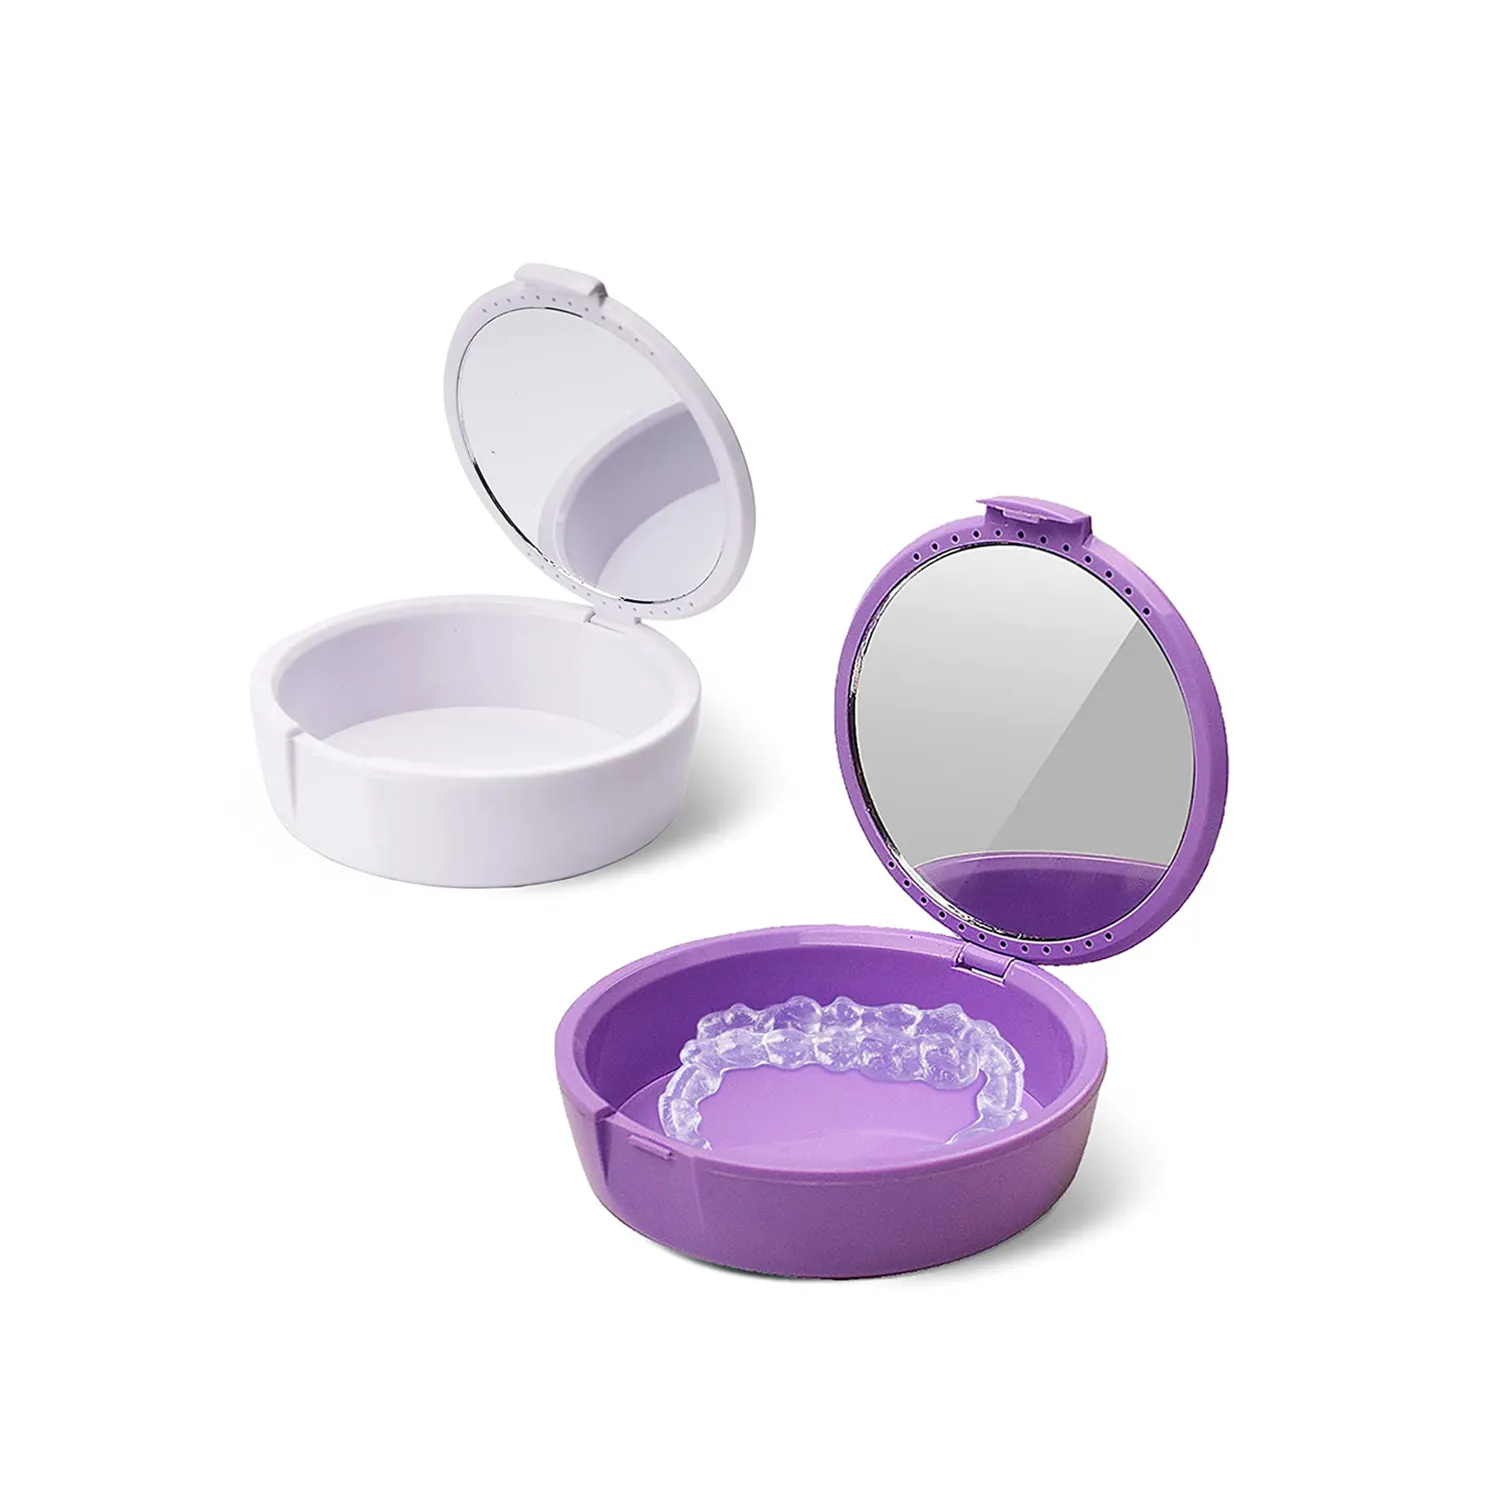 Kotak gigi tiruan bahan Food Grade dengan lubang ventilasi dan cermin